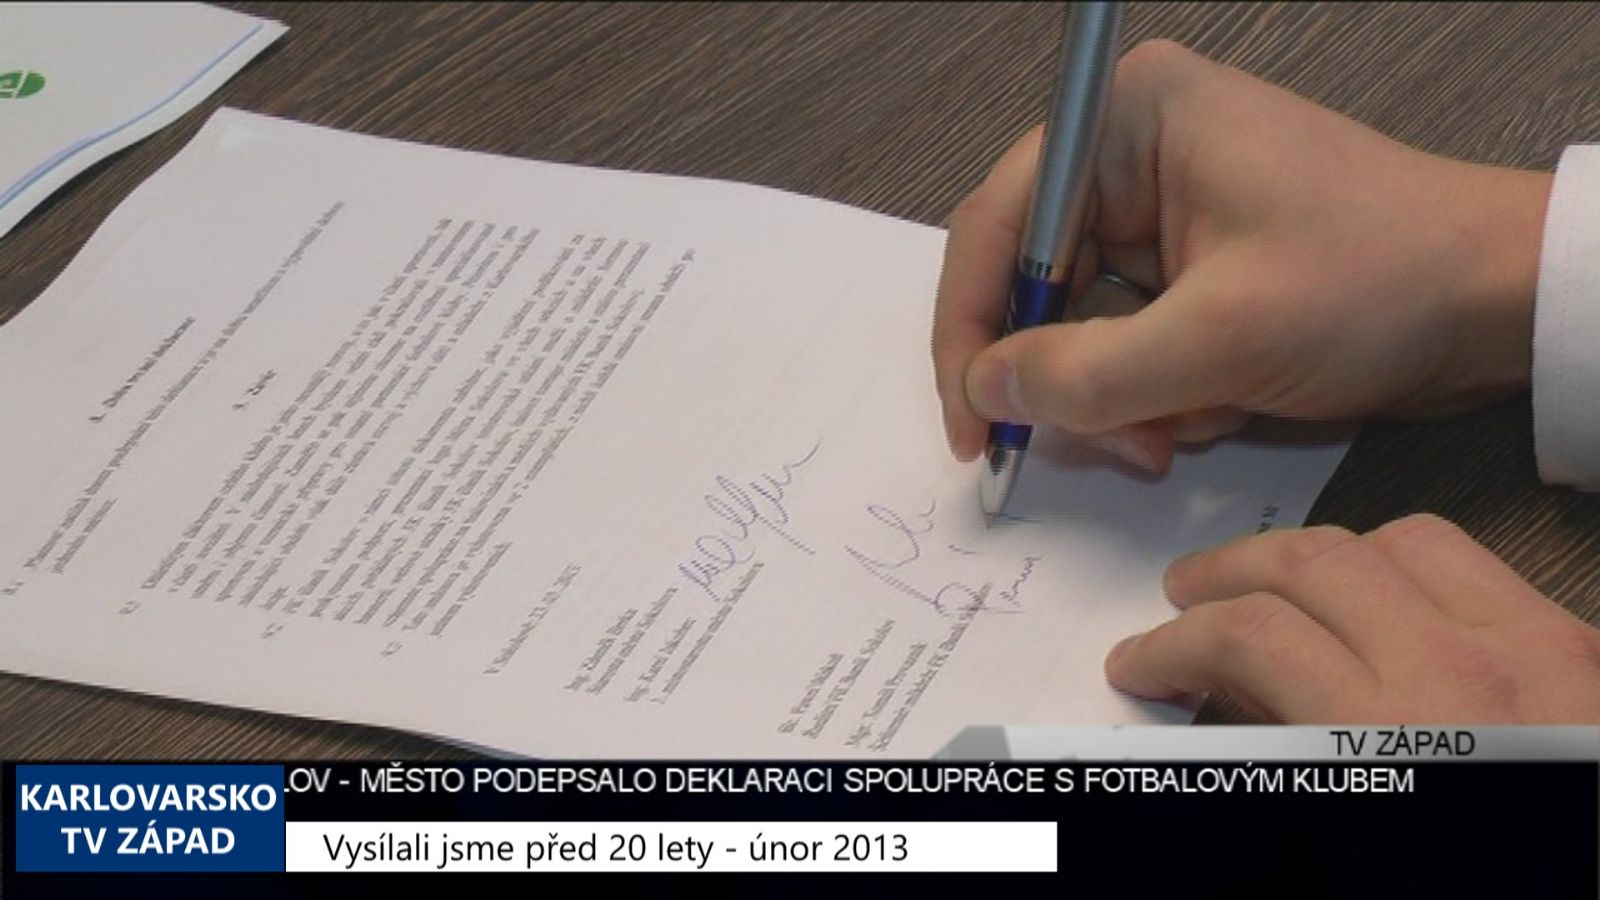 2013 – Sokolov: Město podepsalo deklaraci s fotbalovým klubem 4895 (TV Západ)